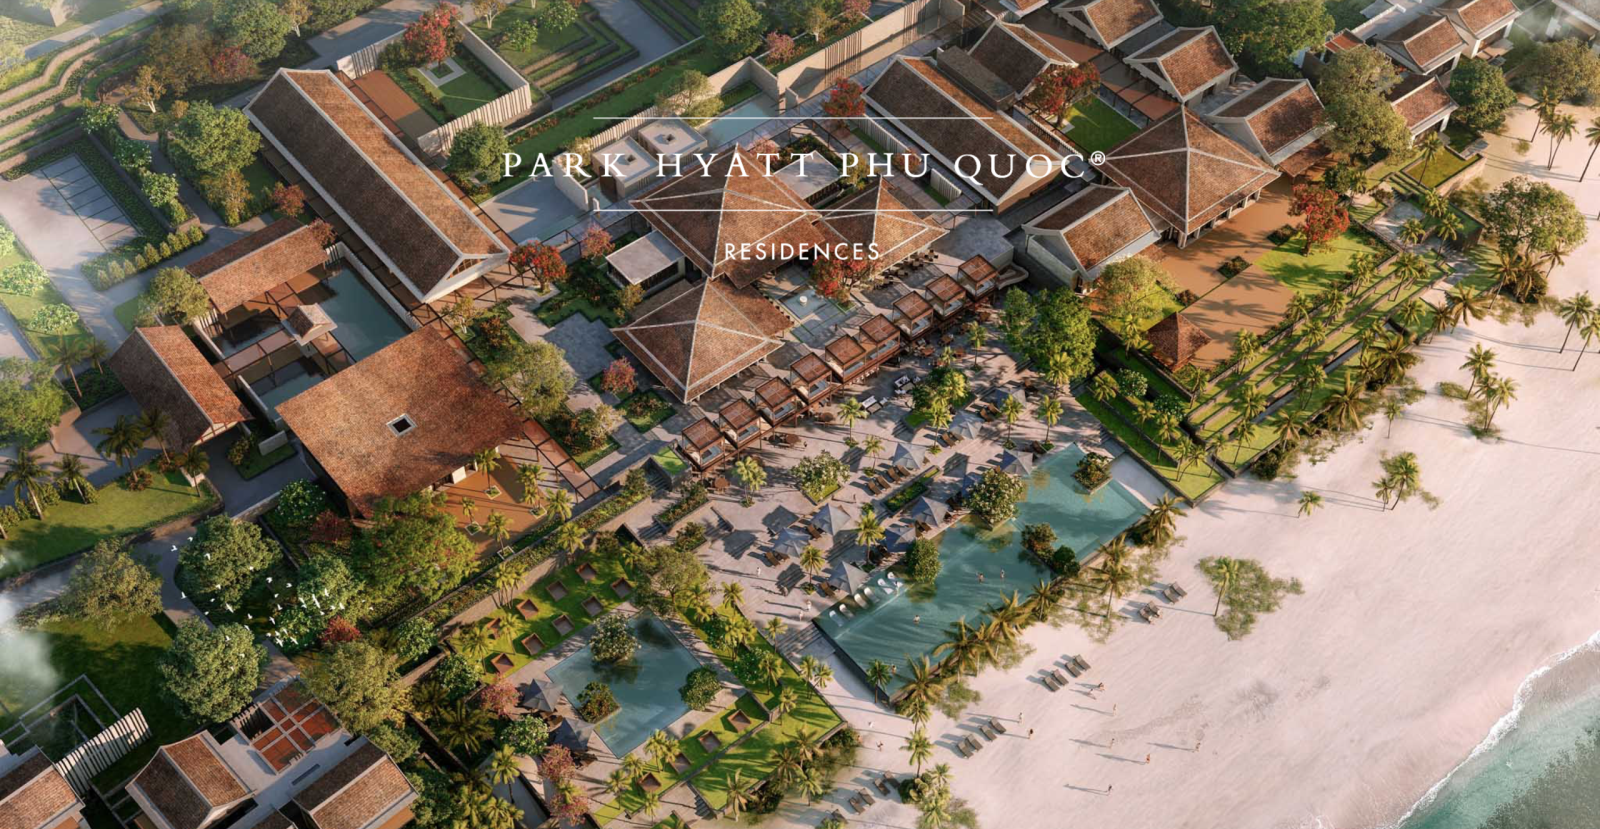 Hyatt và BIM Group công bố kế hoạch phát triển Park Hyatt Phu Quoc tại Việt Nam